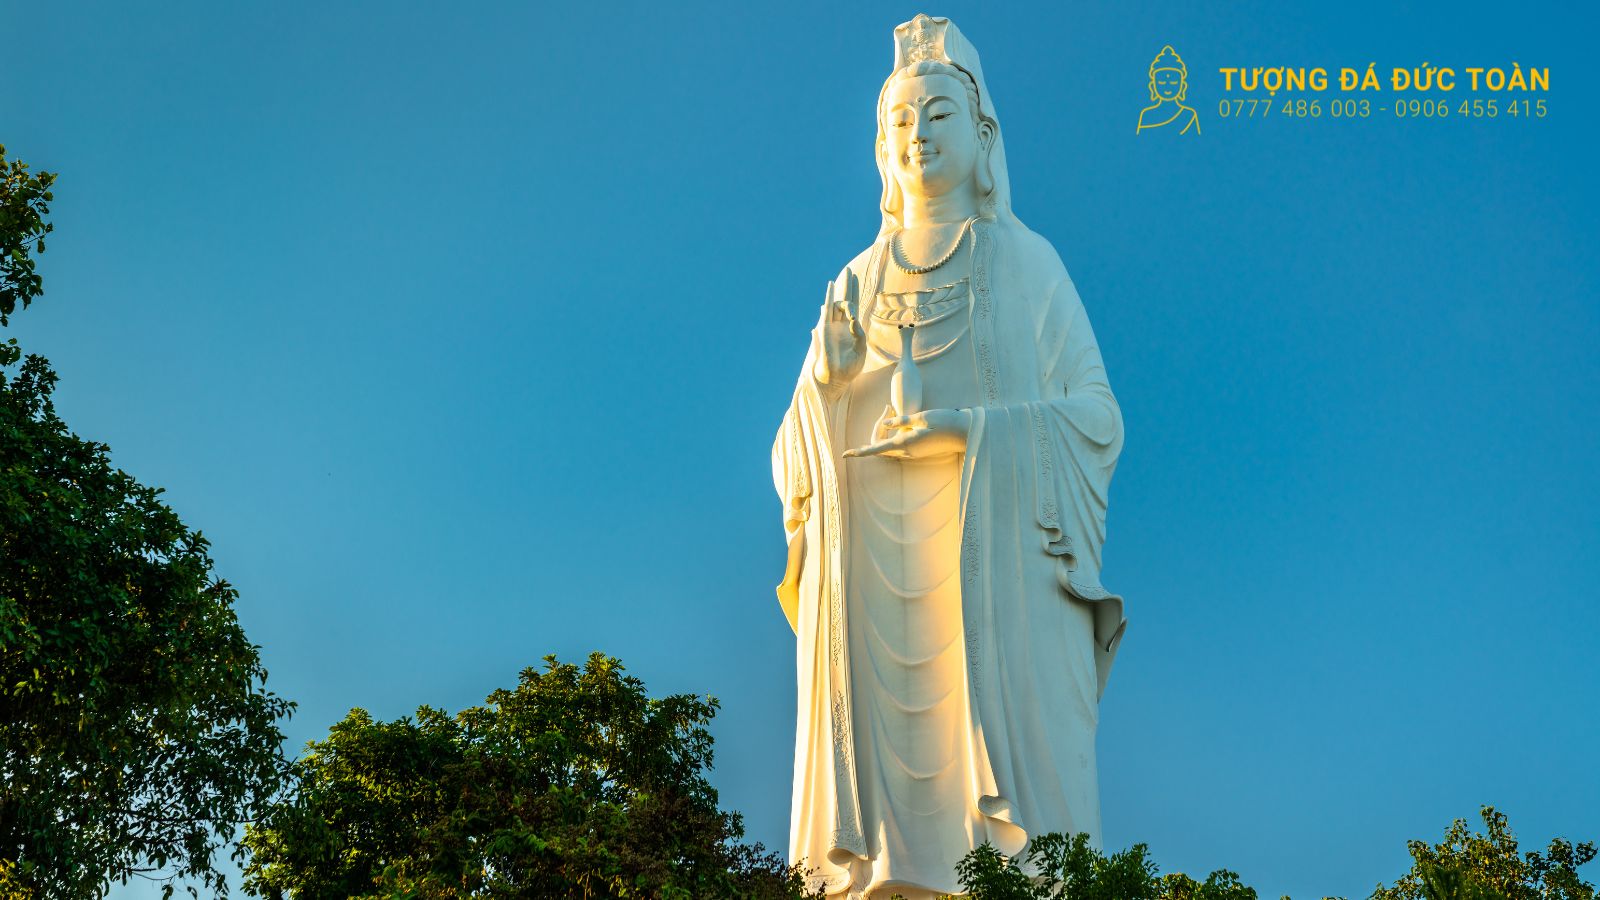 Tượng Phật Chùa Linh Ứng Đà Nẵng Sơn Trà – tượng Phật đạt kỷ lục cao nhất Việt Nam